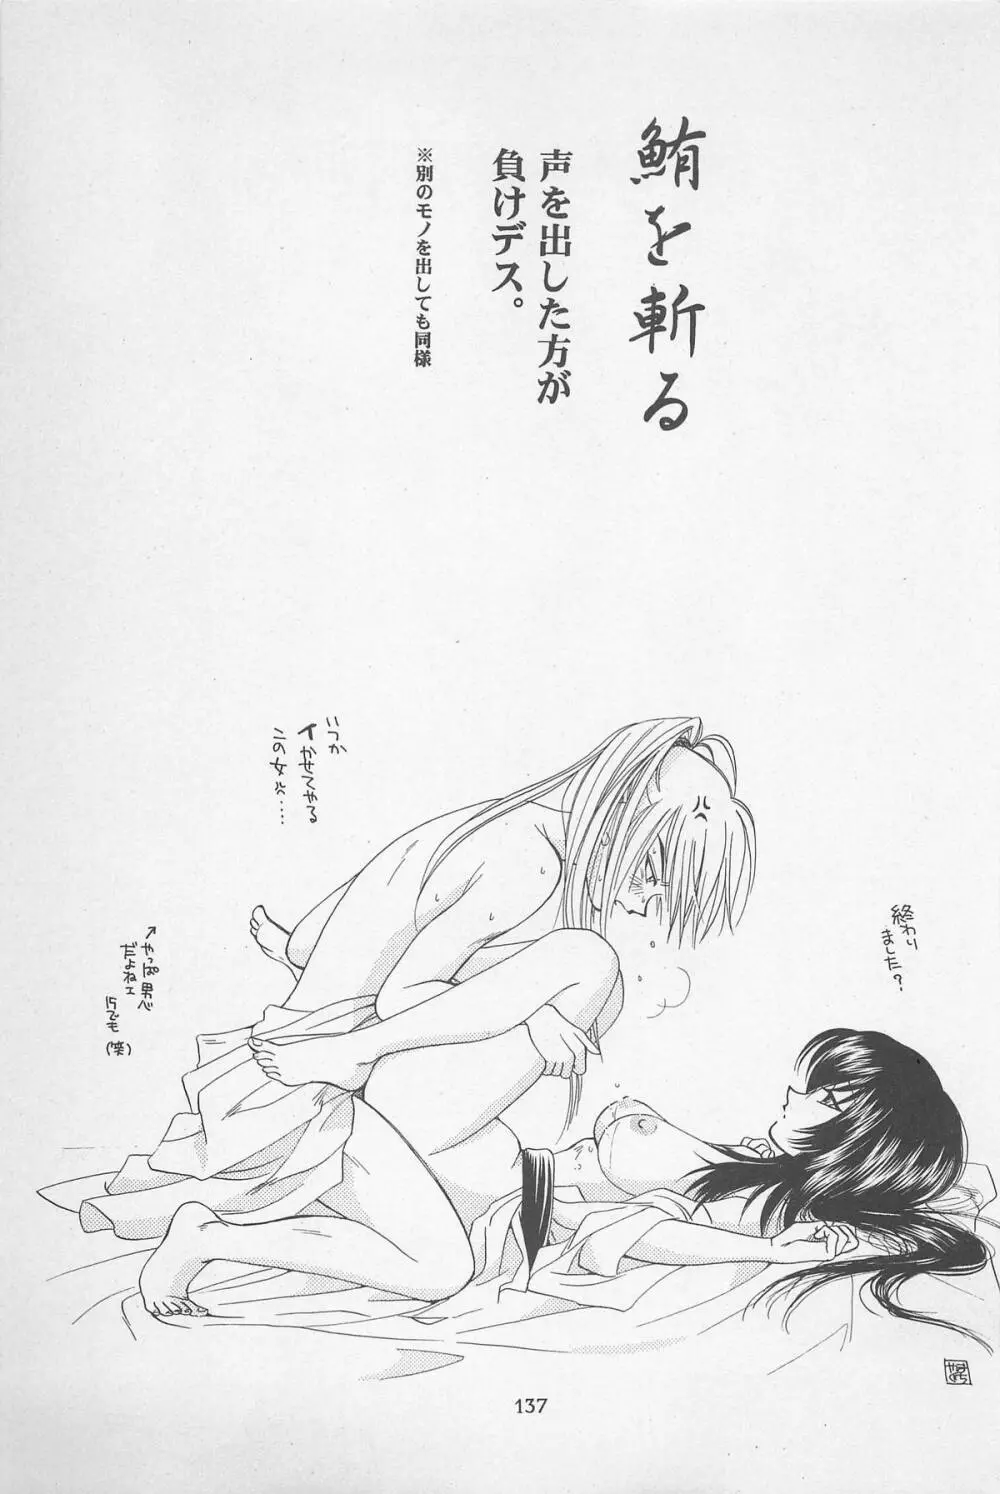 禁忌Ⅱ THE WORKS OF SHINJI YAMAGUCHI - page137